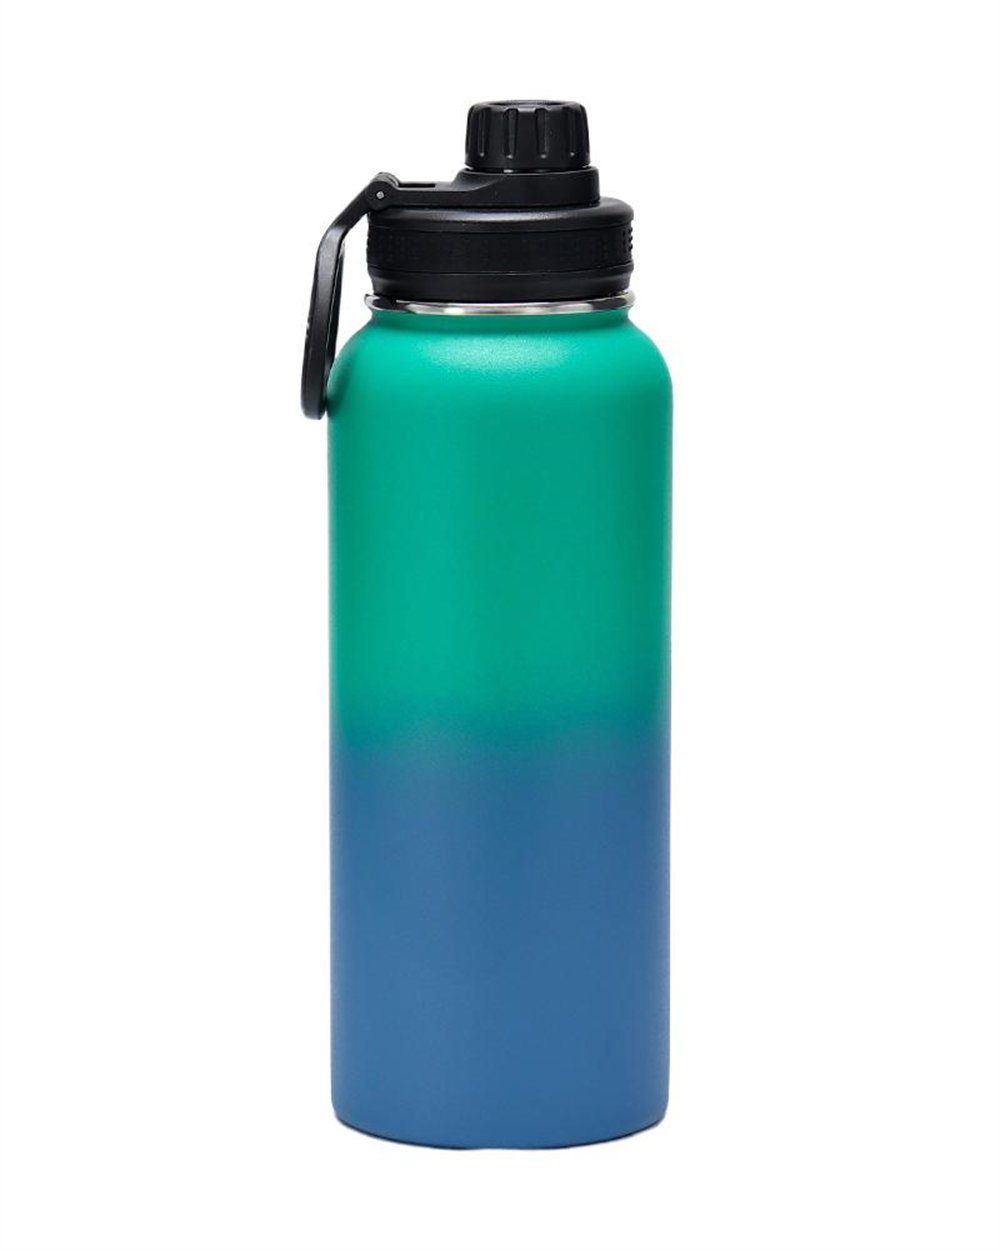 Rouemi Kaltgetränke Trinkflasche, Isolierflasche Heiß- Isolierung Blau-grün heiß/24h Große Kapazität 12h und kalt, Thermobecher,1000ml